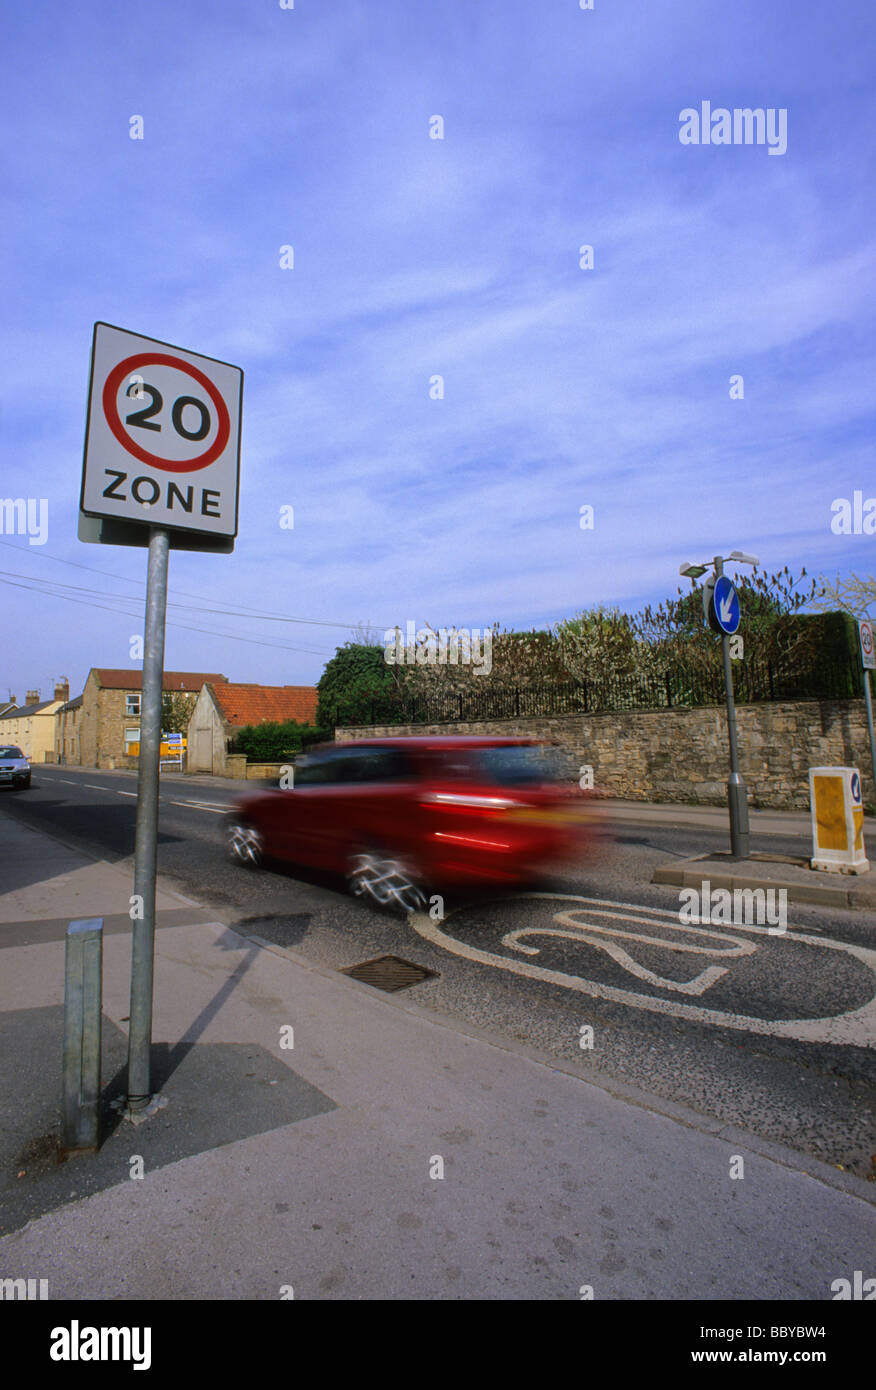 Auto passando a 20 miglia per ora il limite massimo di velocità zona segno di avvertimento sulla strada attraverso il villaggio nei pressi di Leeds Yorkshire Regno Unito Foto Stock